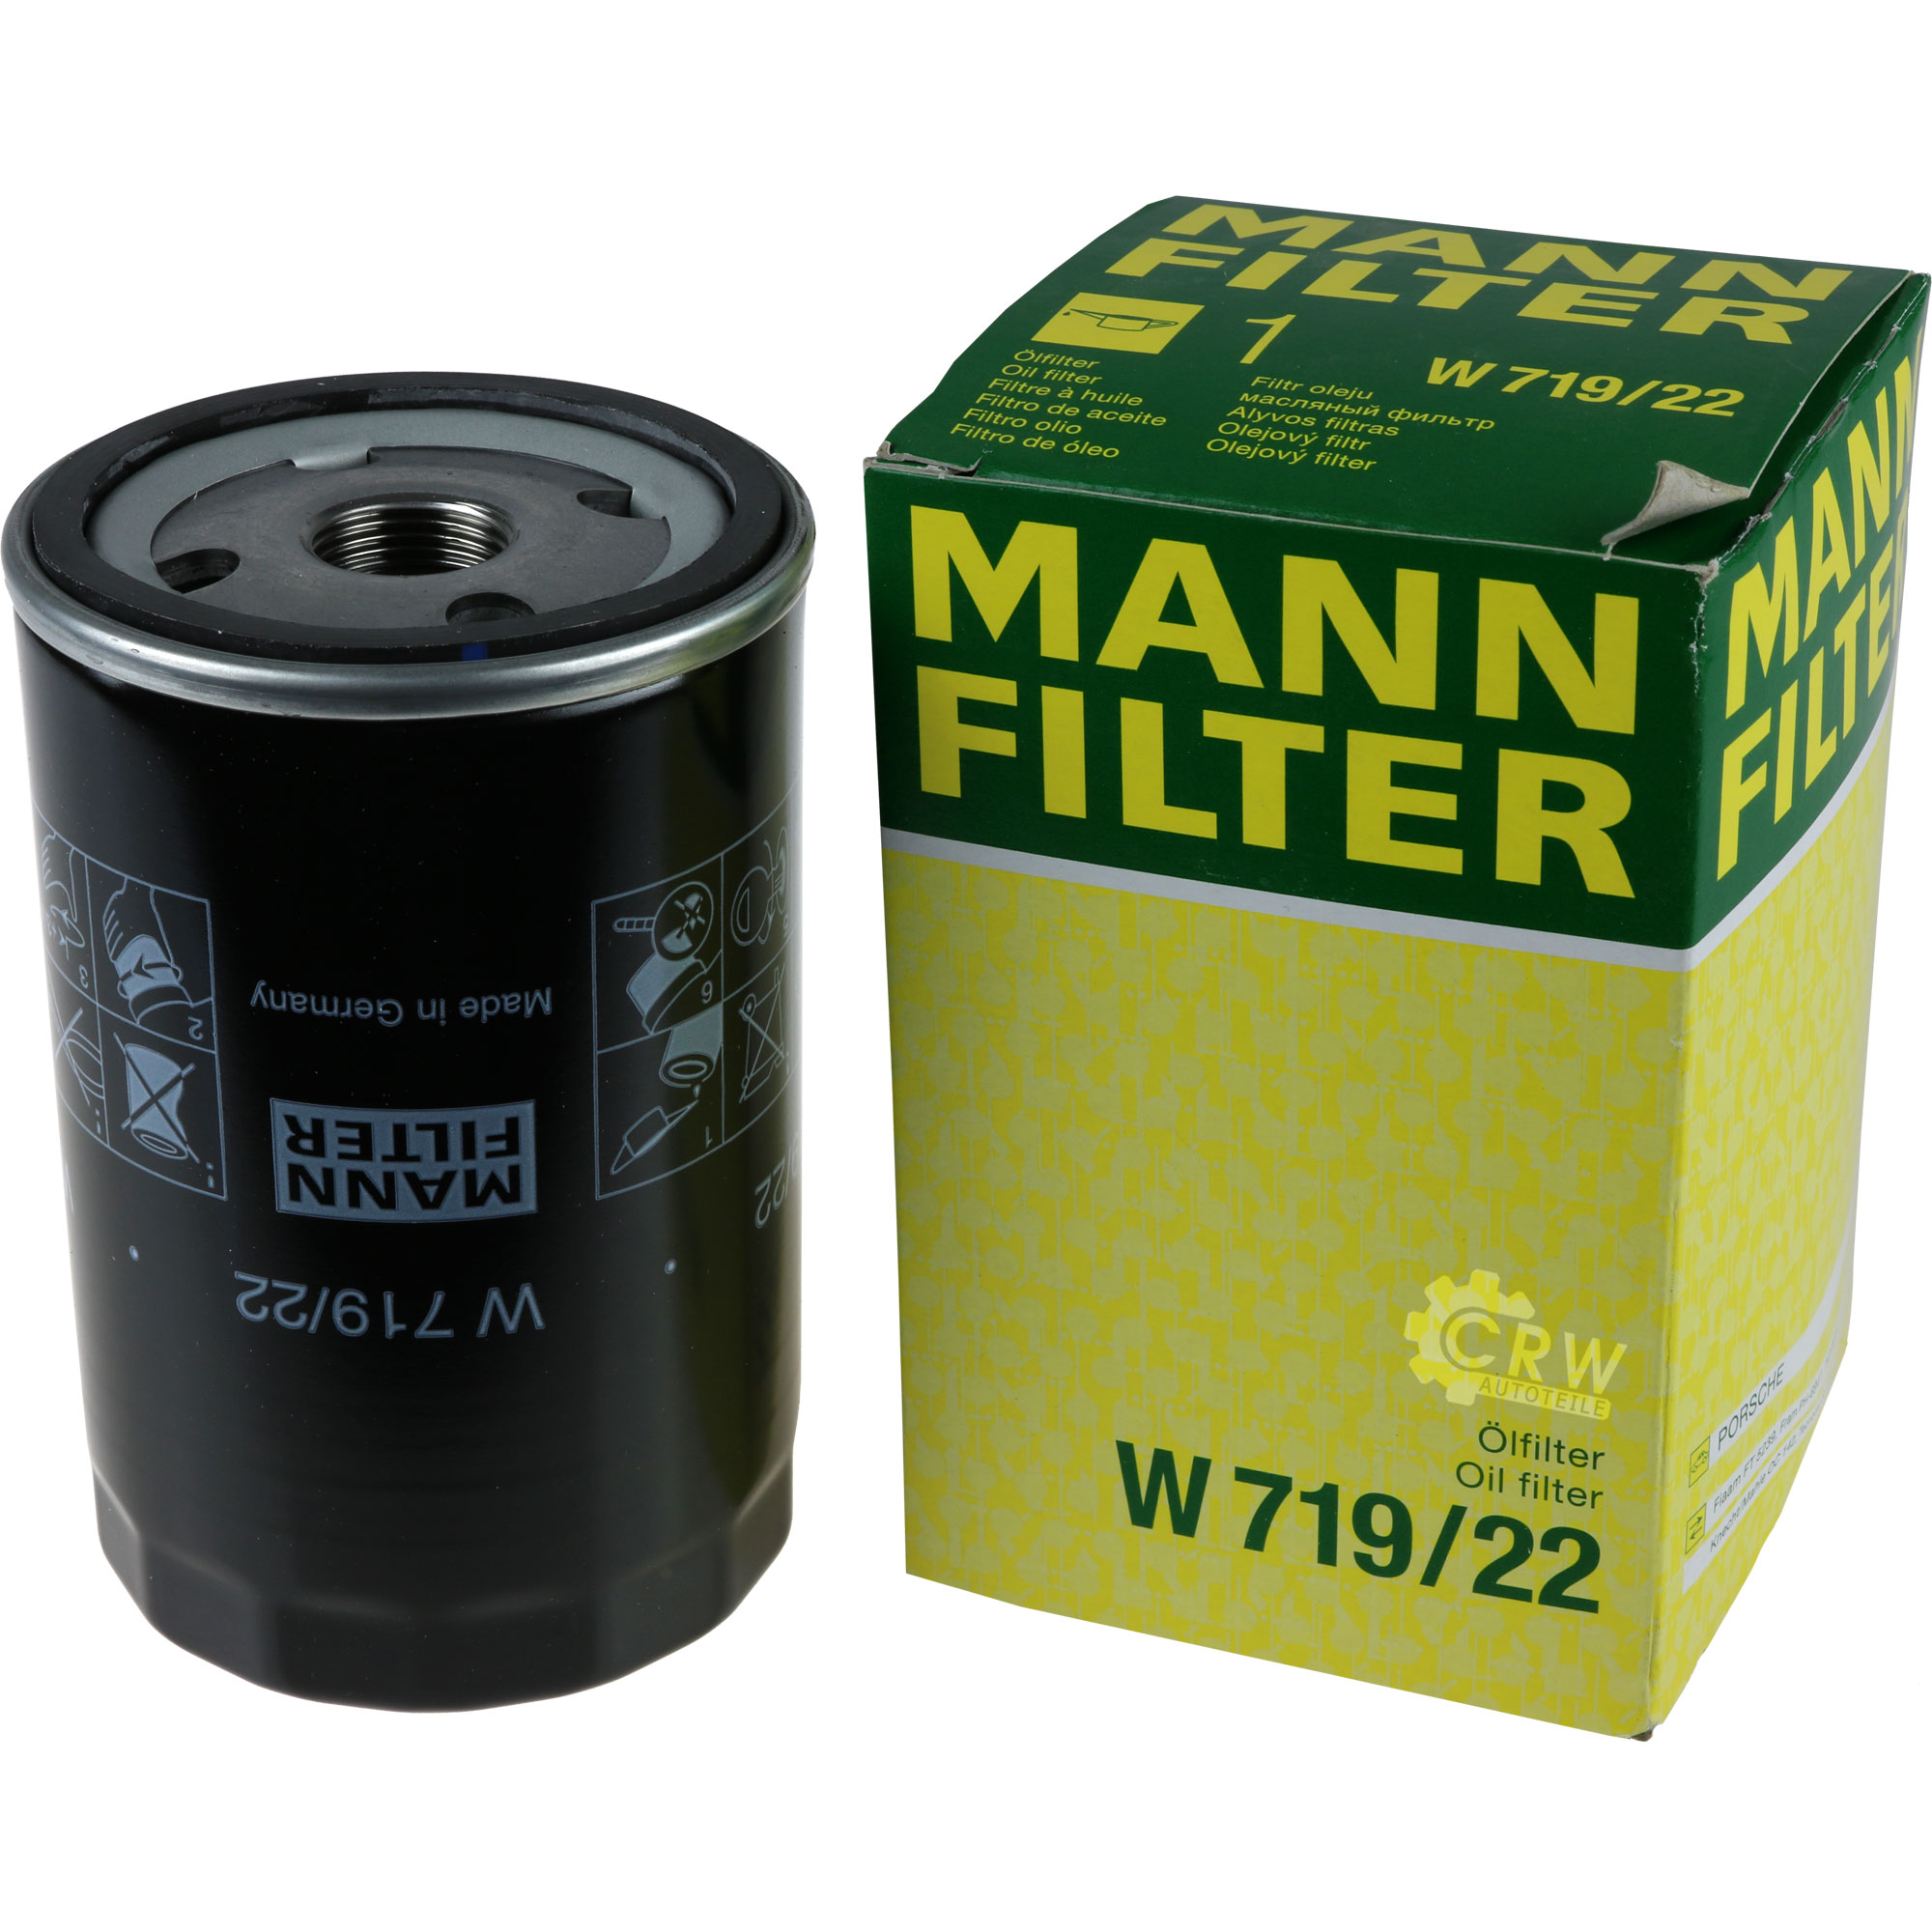 MANN-FILTER Ölfilter W 719/22 Oil Filter